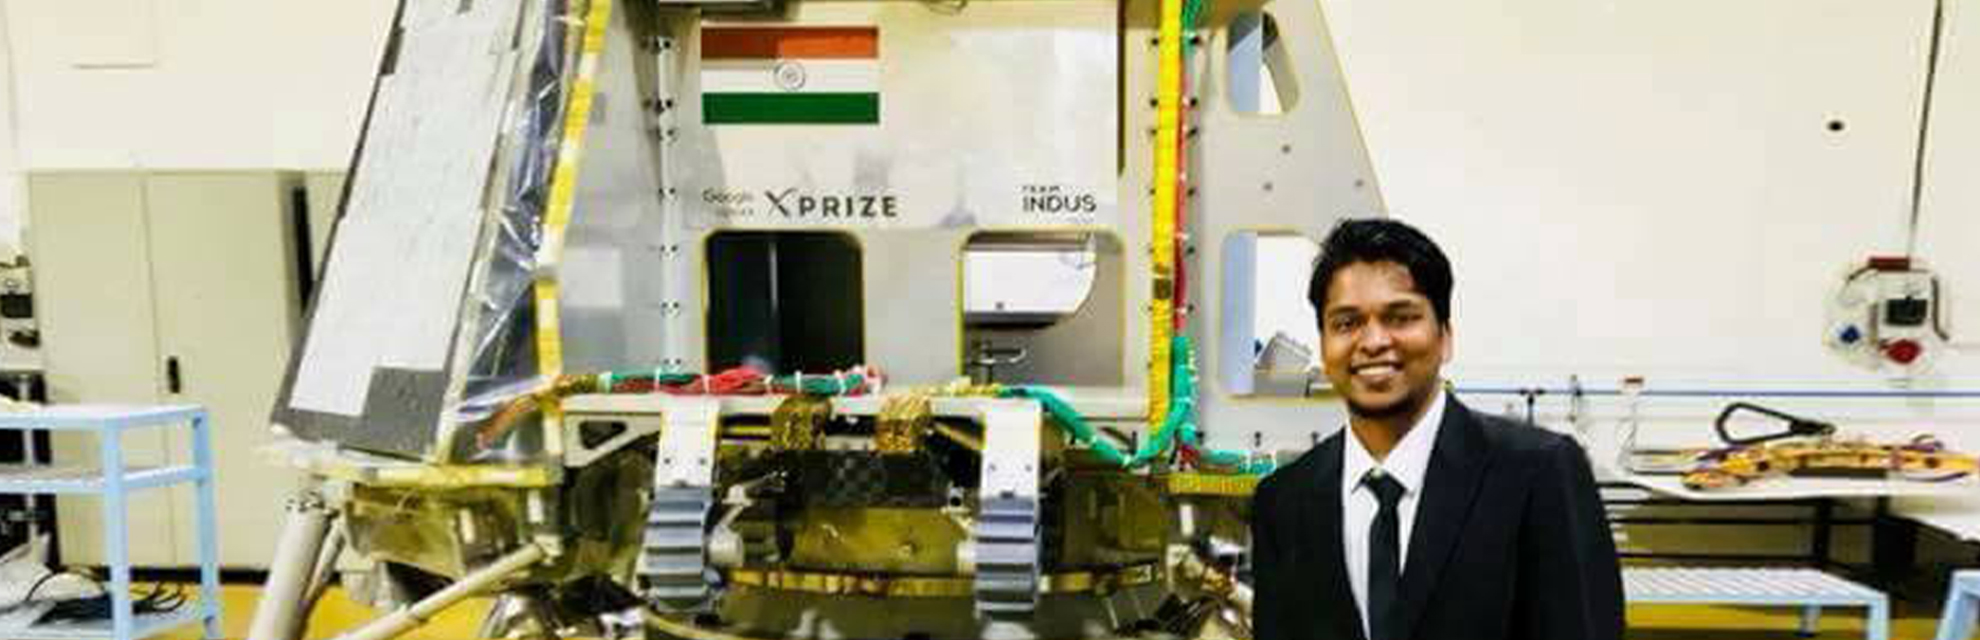 जापान में रहने वाले भारतीय वैज्ञानिक डॉ. आदित्य बारस्कर वायरलेस बिजली पैदा करने पर काम कर रहे हैं